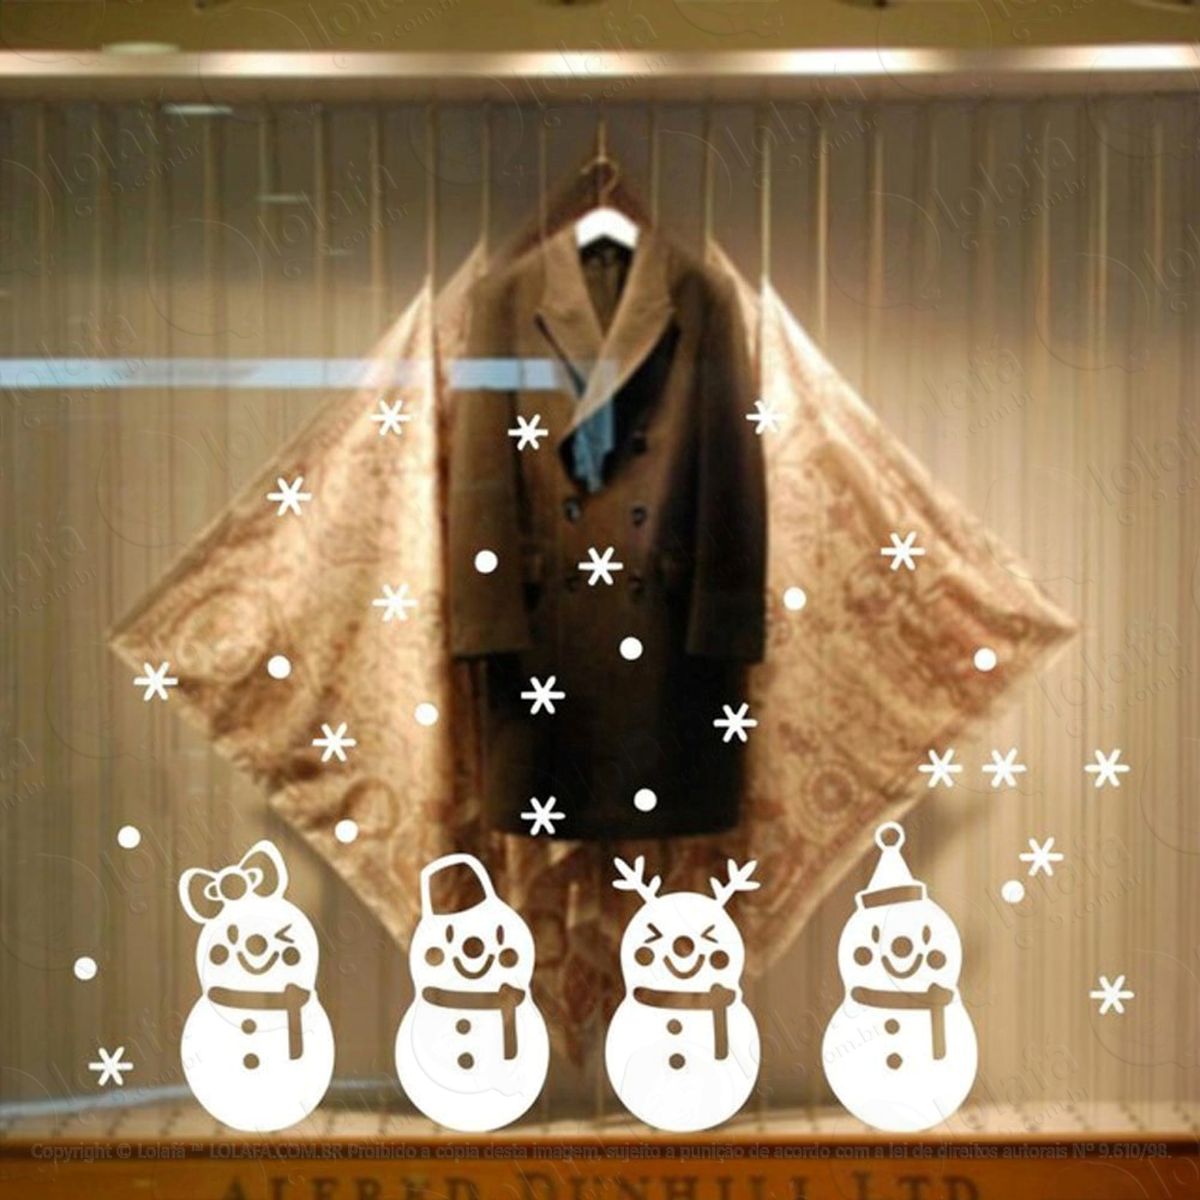 bonequinhos de neve adesivo de natal para vitrine, parede, porta de vidro - decoração natalina mod:62